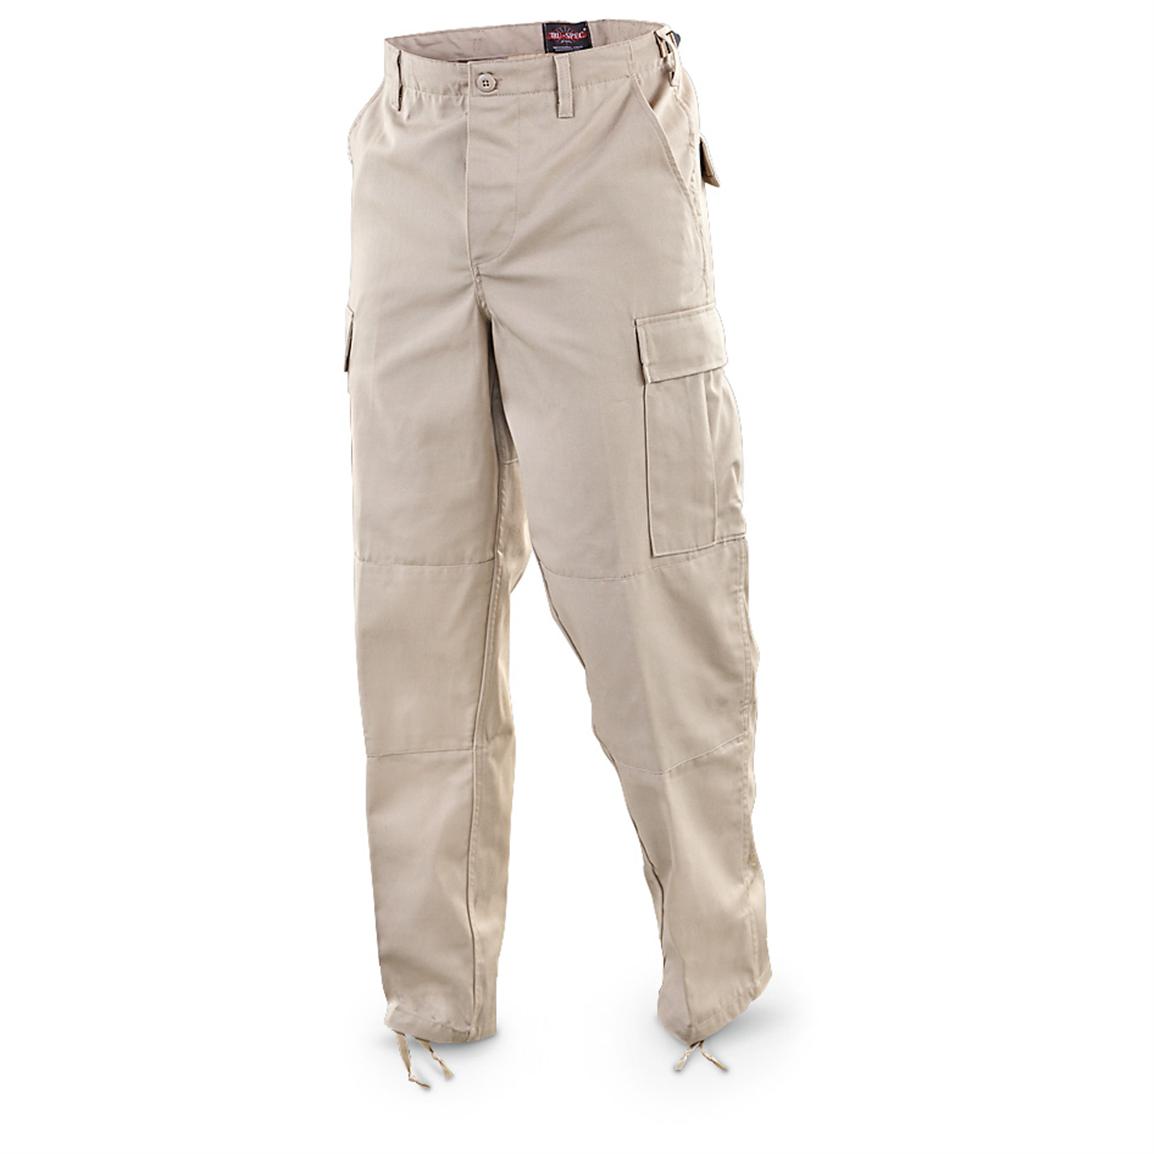 Tru-Spec® Twill BDU Pants, Tan - 582913, Pants at Sportsman's Guide